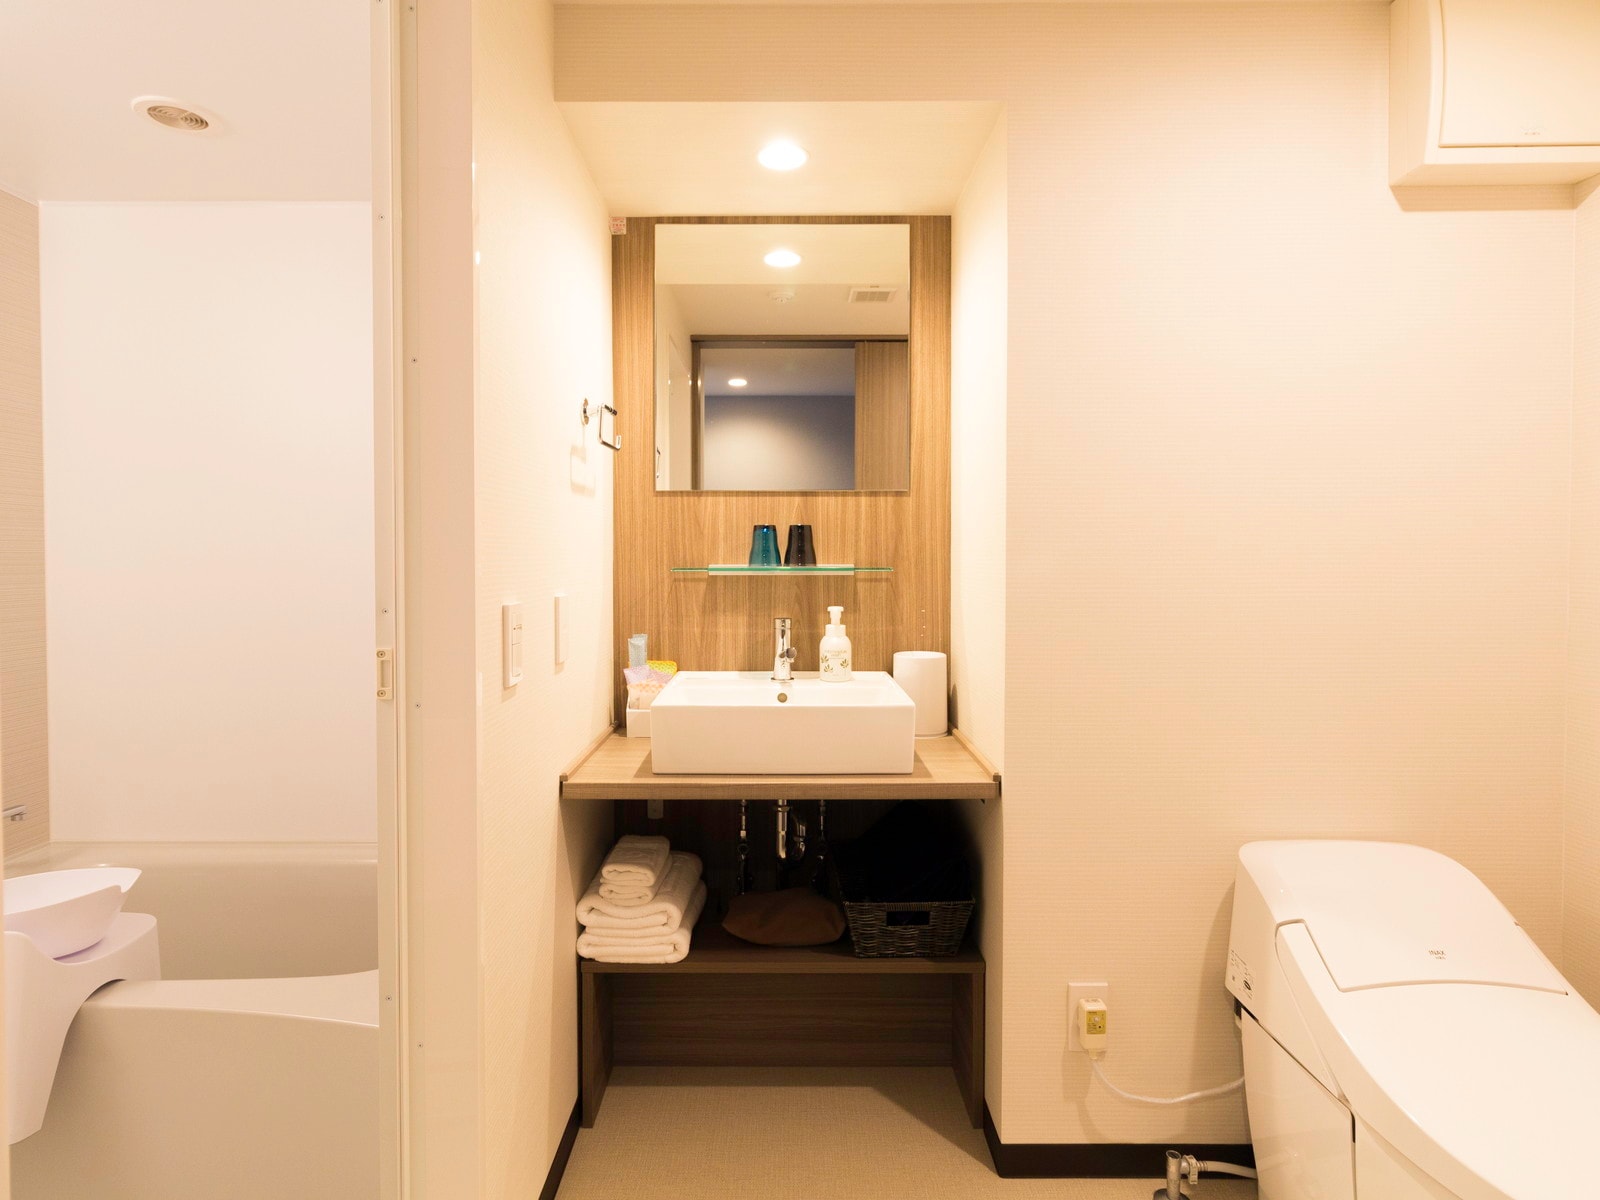 Bathtub & toilet terintegrasi (kamar mandi dan toilet berasal dari satu pintu masuk * Pengaturan mungkin sedikit berbeda tergantung pada ruangan